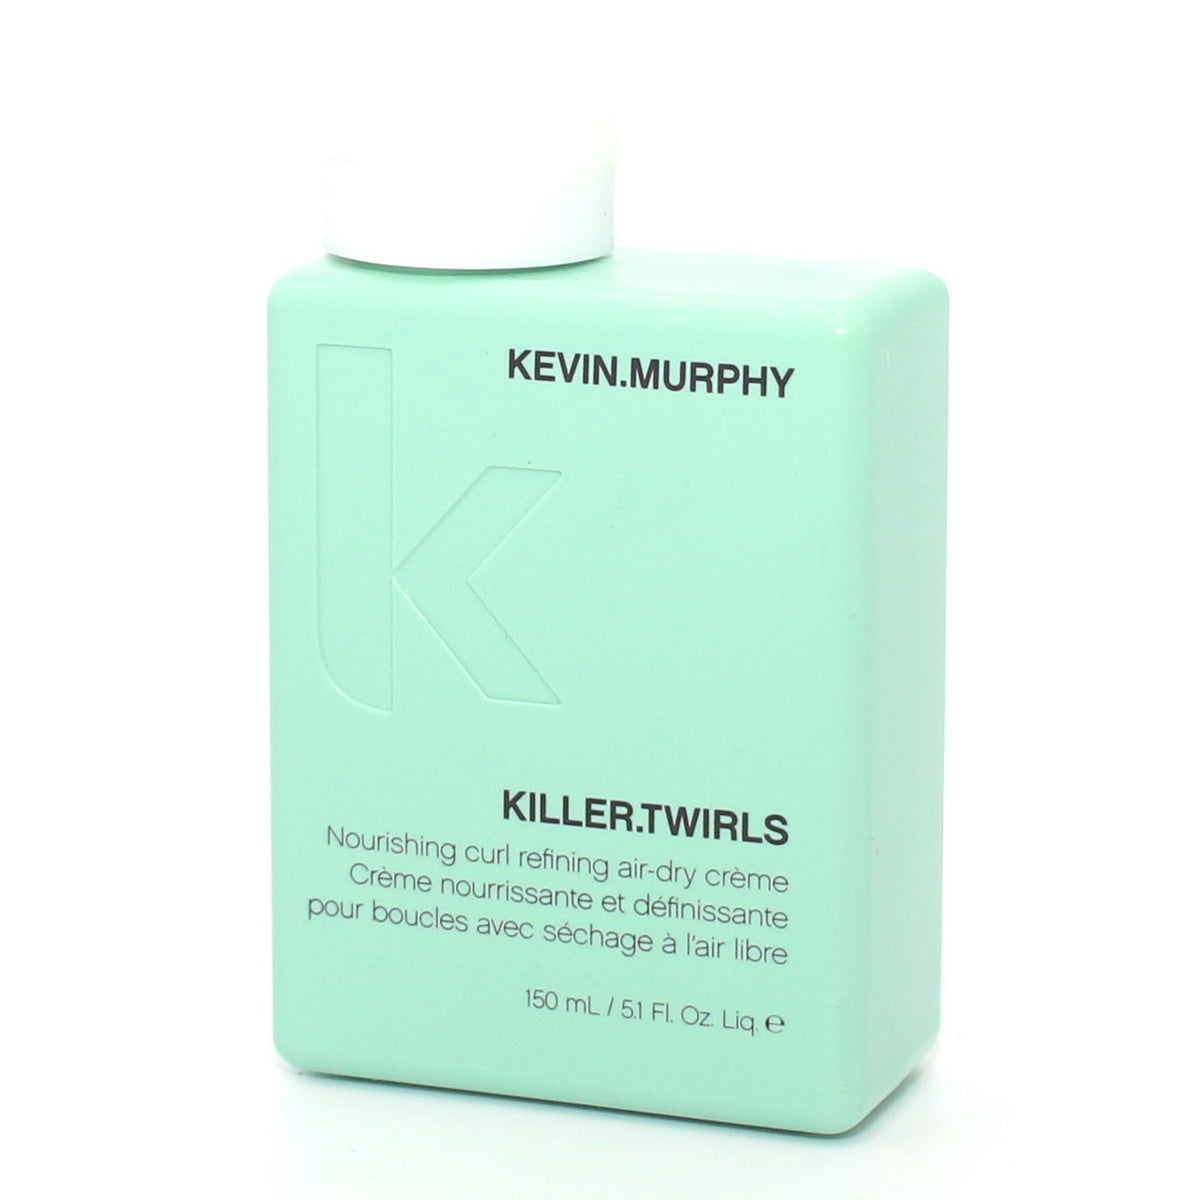 Kevin murphy killer twirls nourishing curl refining air-dry crème 150ml  5.1oz